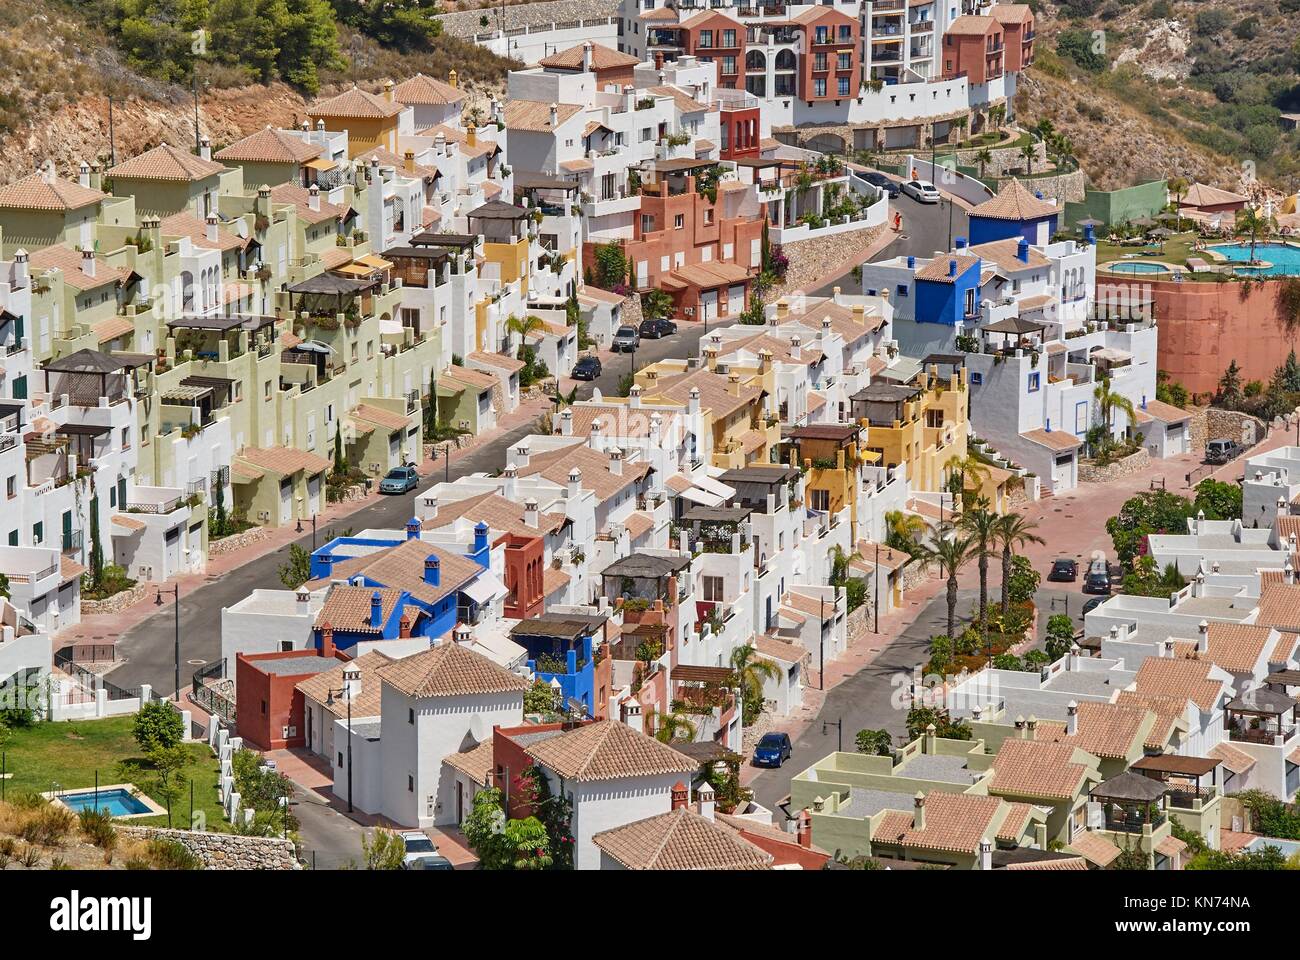 Estate on the Mediterranean coast. Stock Photo